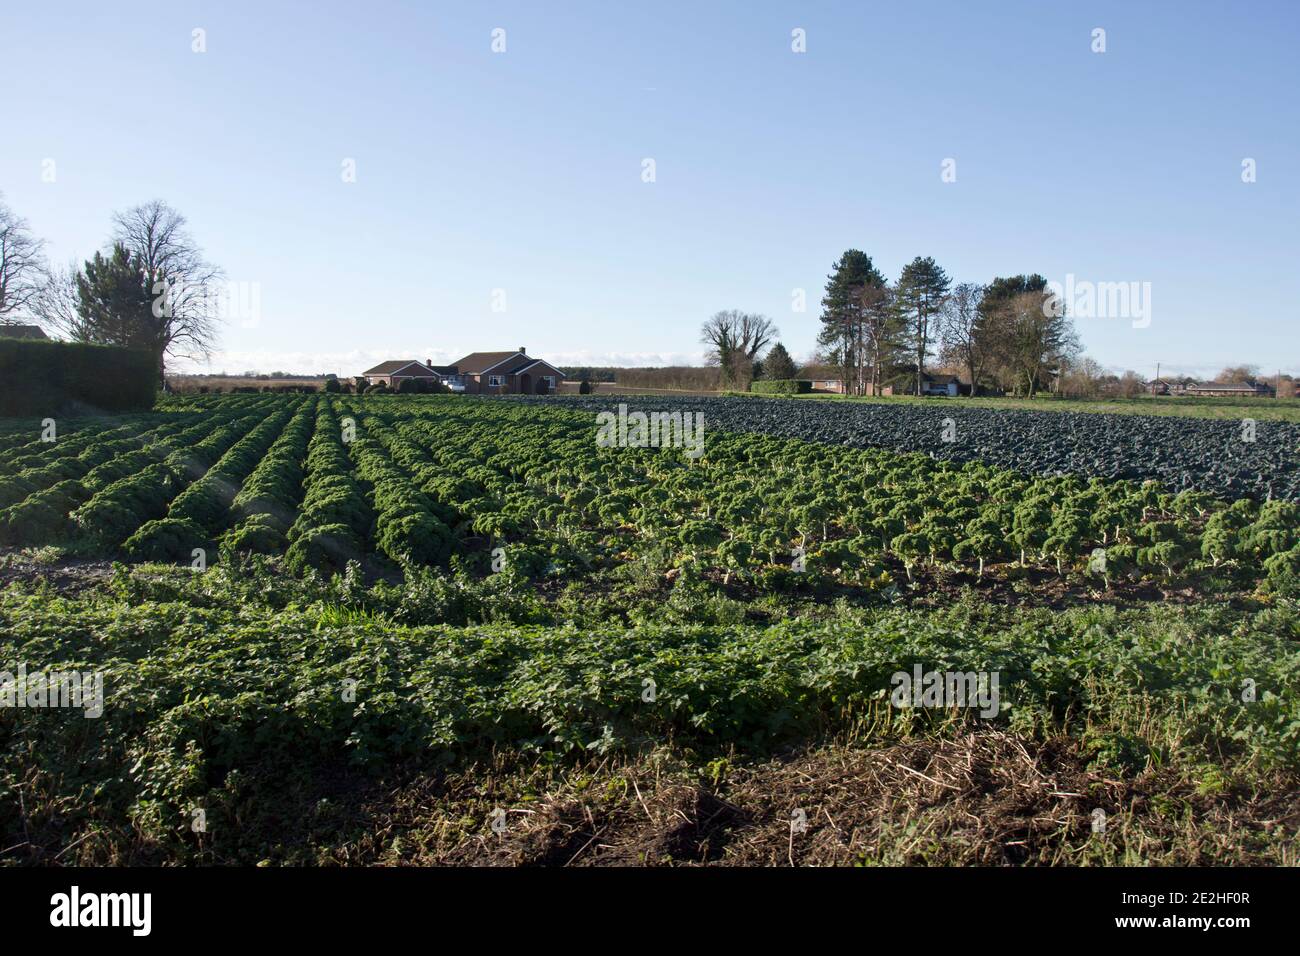 Les plantes de kale bouclé se développent dans la région de Linclnshire Fens de Angleterre, Royaume-Uni Banque D'Images